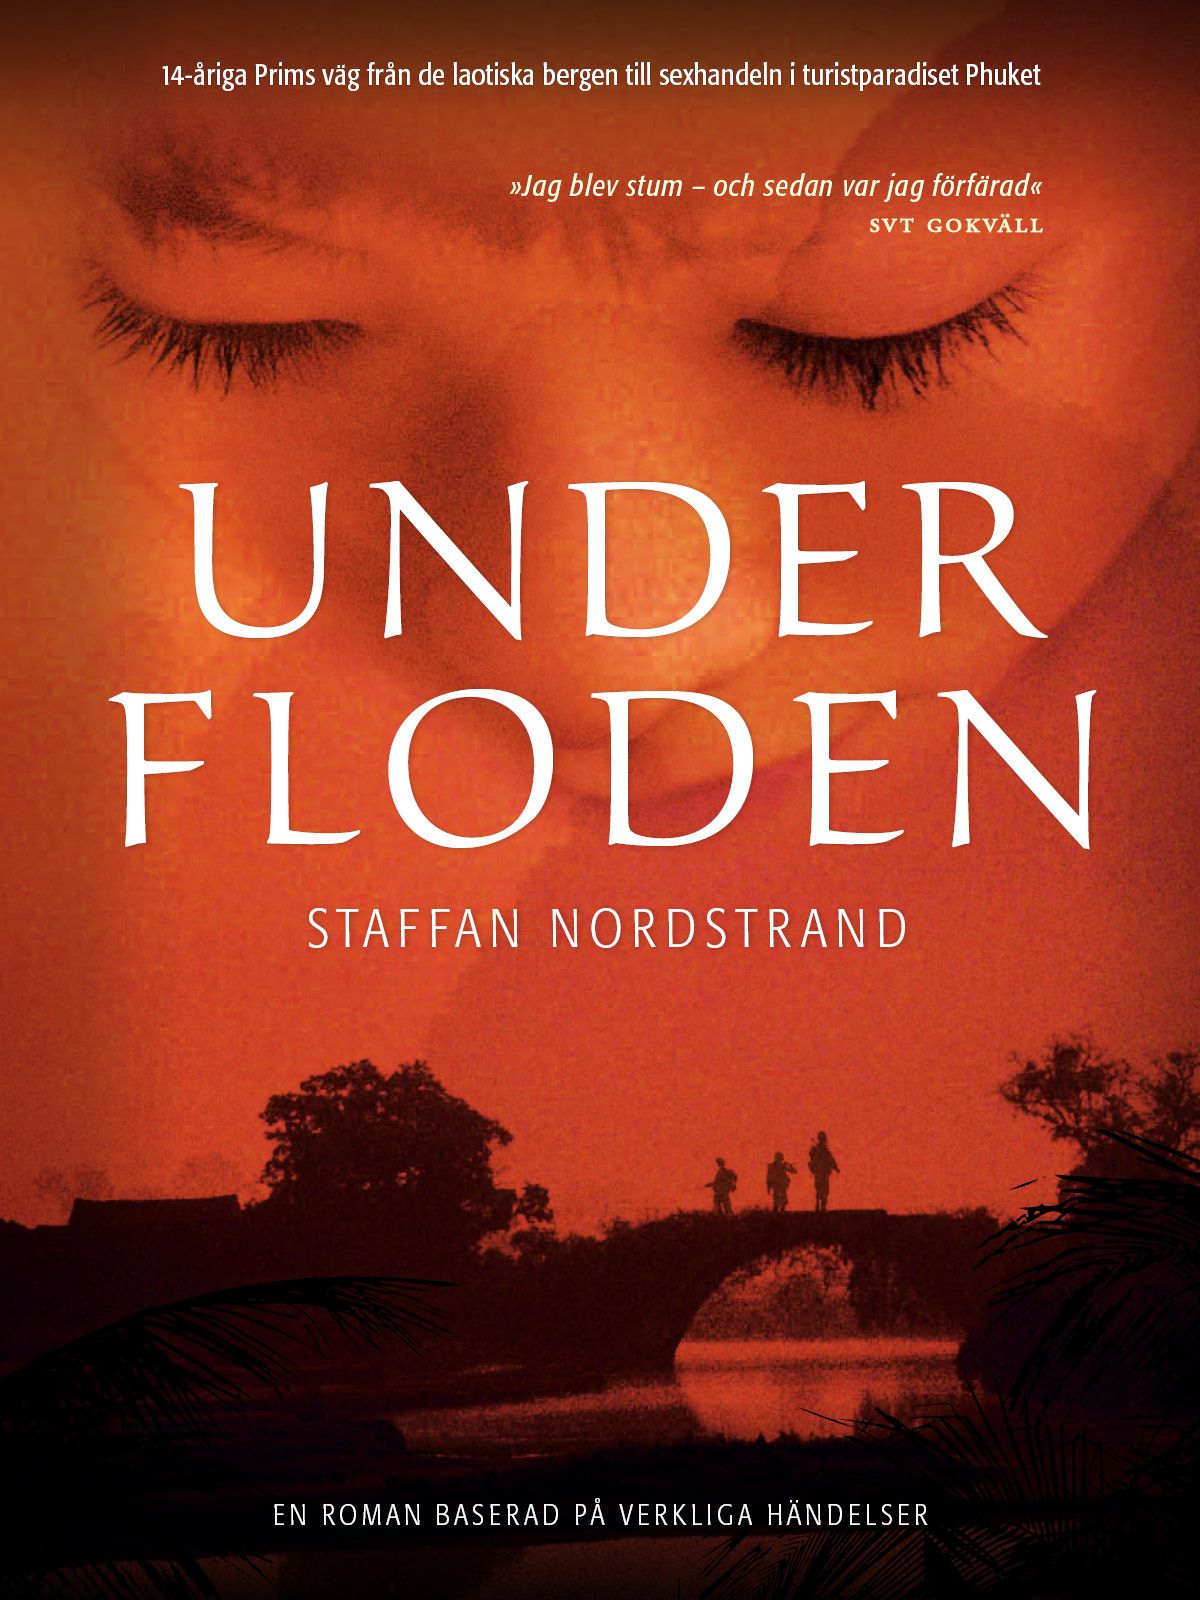 Under floden, e-bok av Staffan Nordstrand